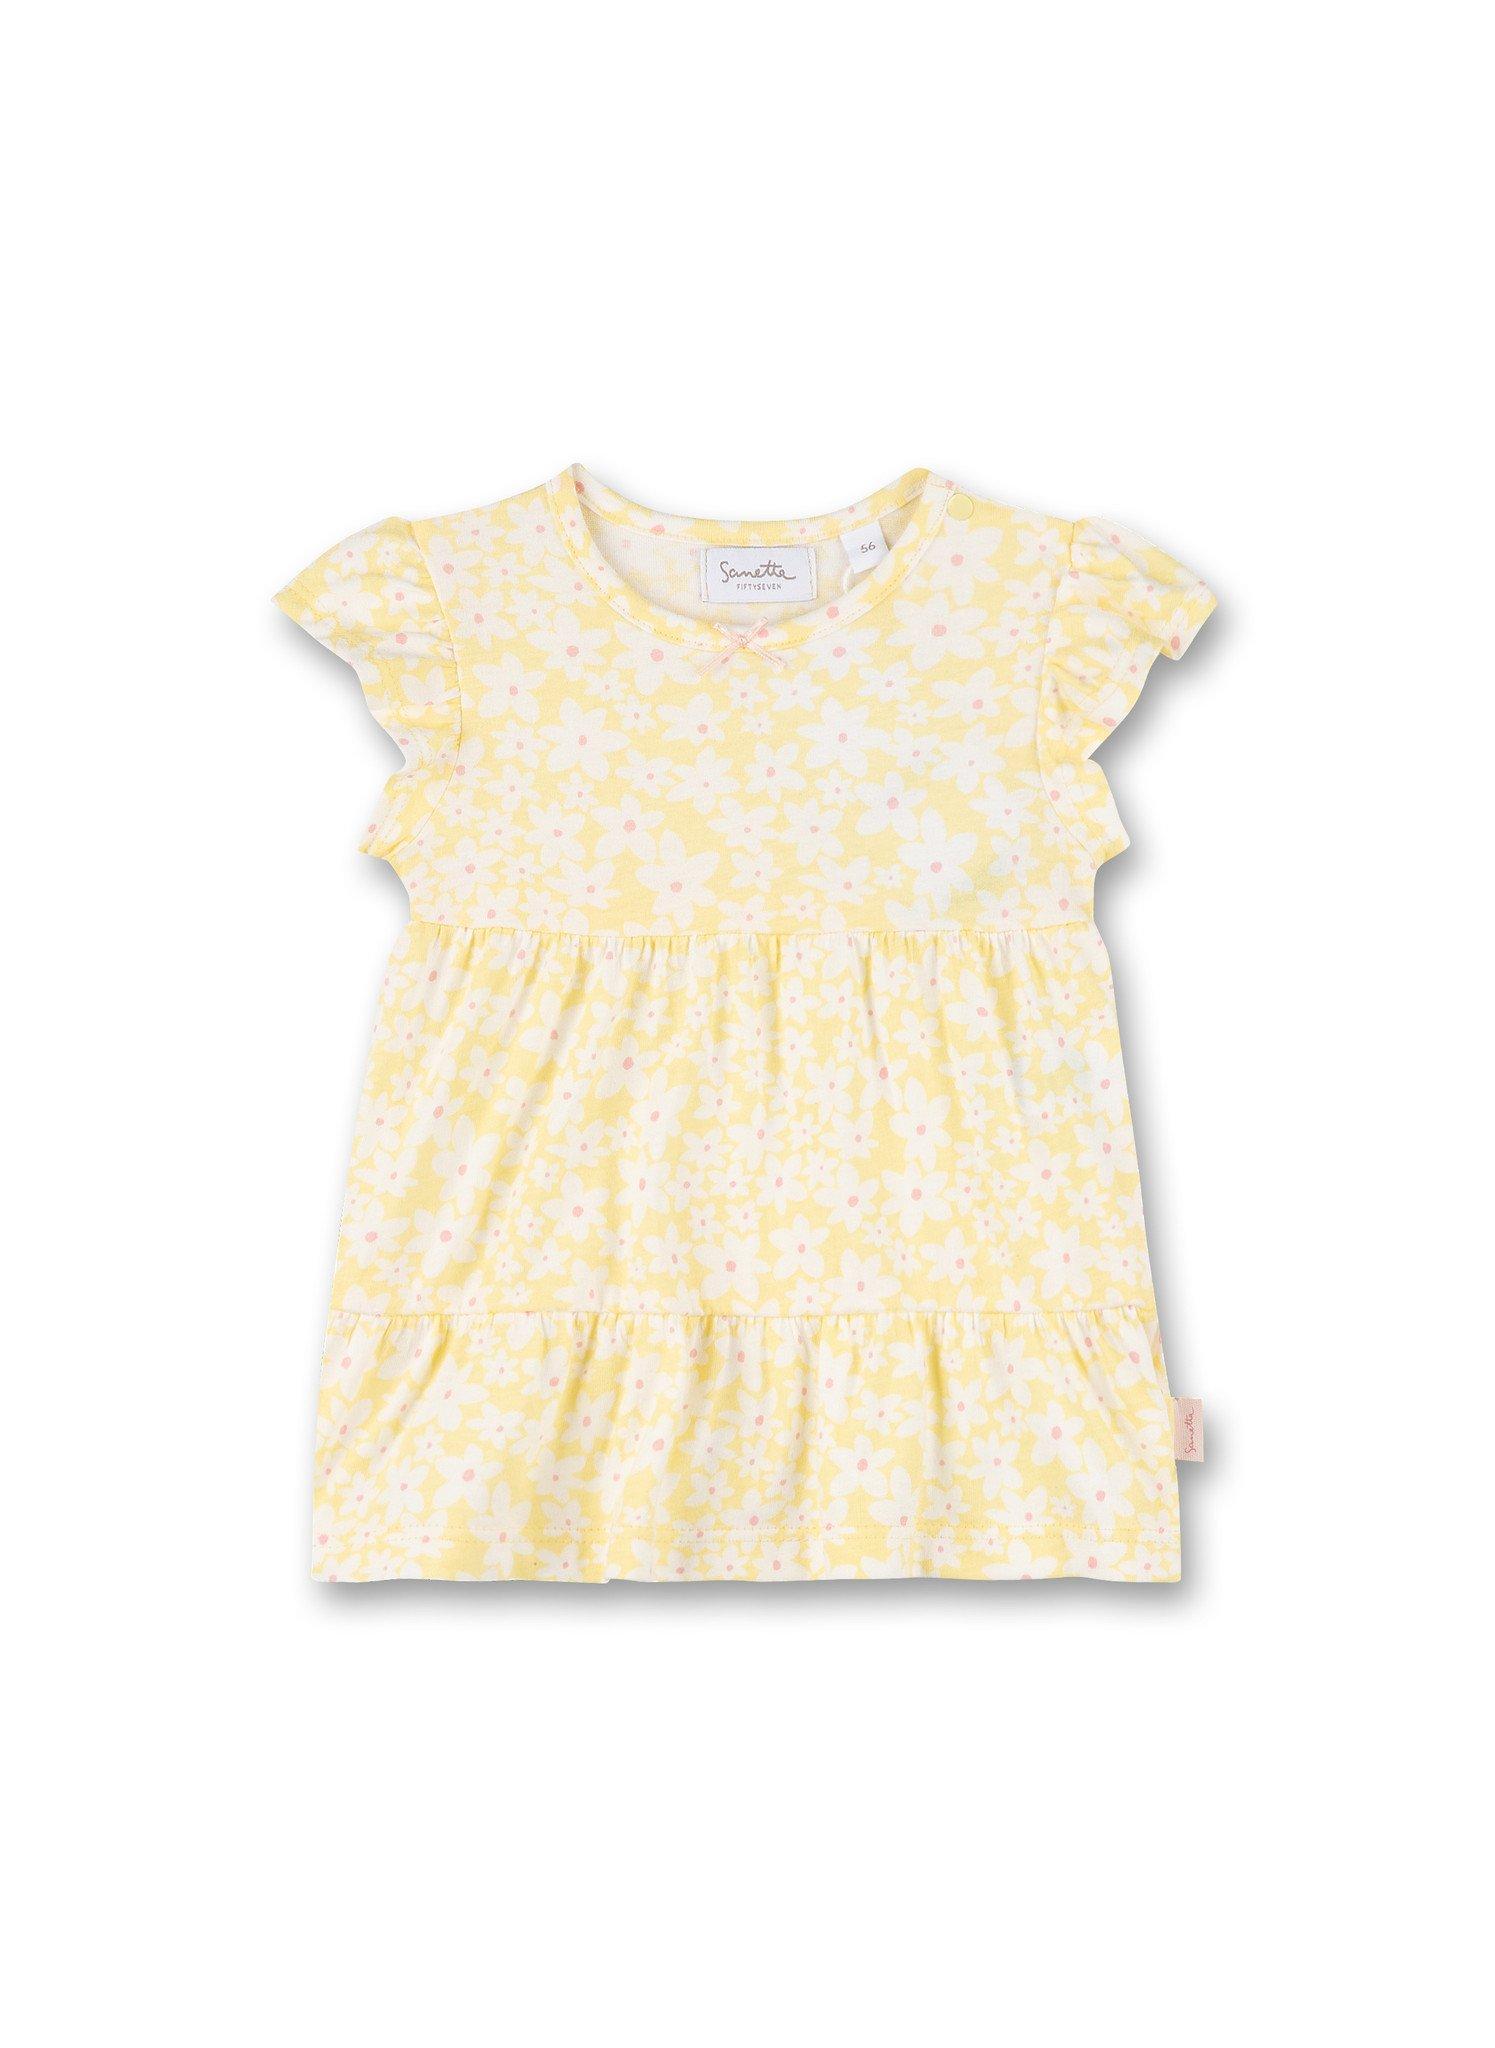 Sanetta Fiftyseven  Baby Mädchen Kleid Blumen gelb 